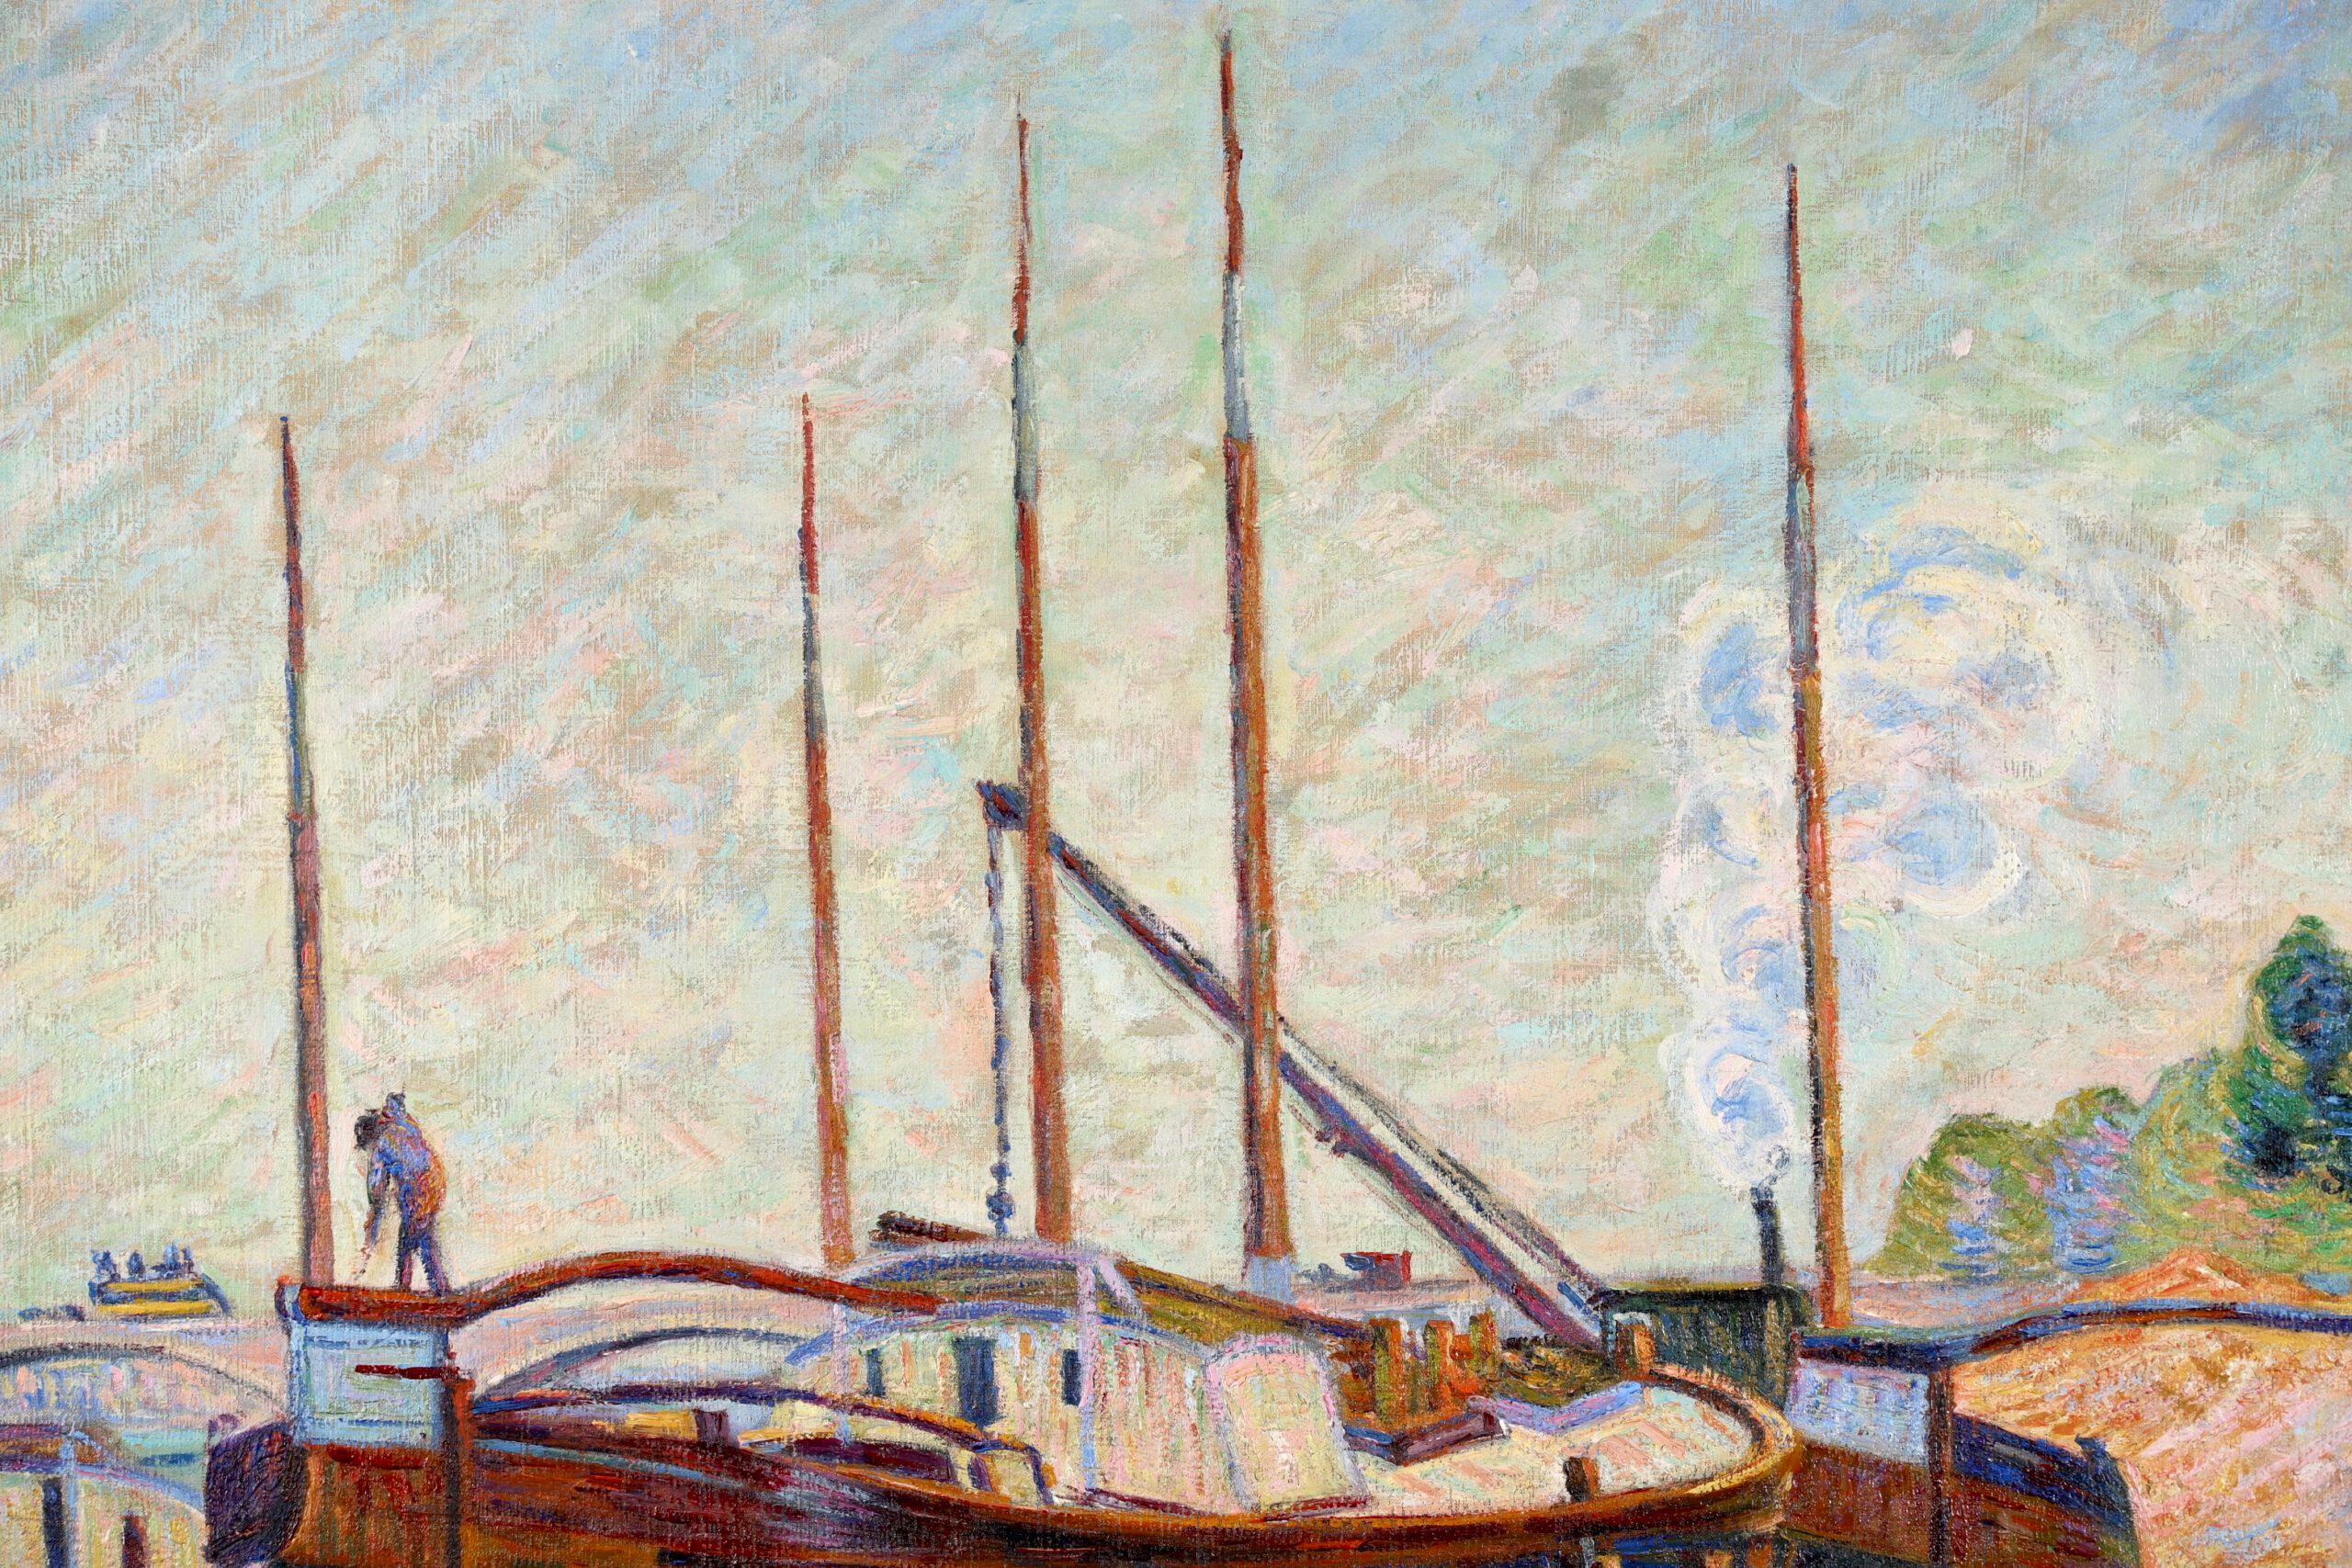 Signierte impressionistische Landschaft Öl auf Leinwand von Französisch Maler Jean Baptiste Armand Guillaumin. Das Werk zeigt Lastkähne, die am Ufer der Seine in Charenton vertäut sind, mit Blick auf eine Brücke im Hintergrund. 

Dieses große und